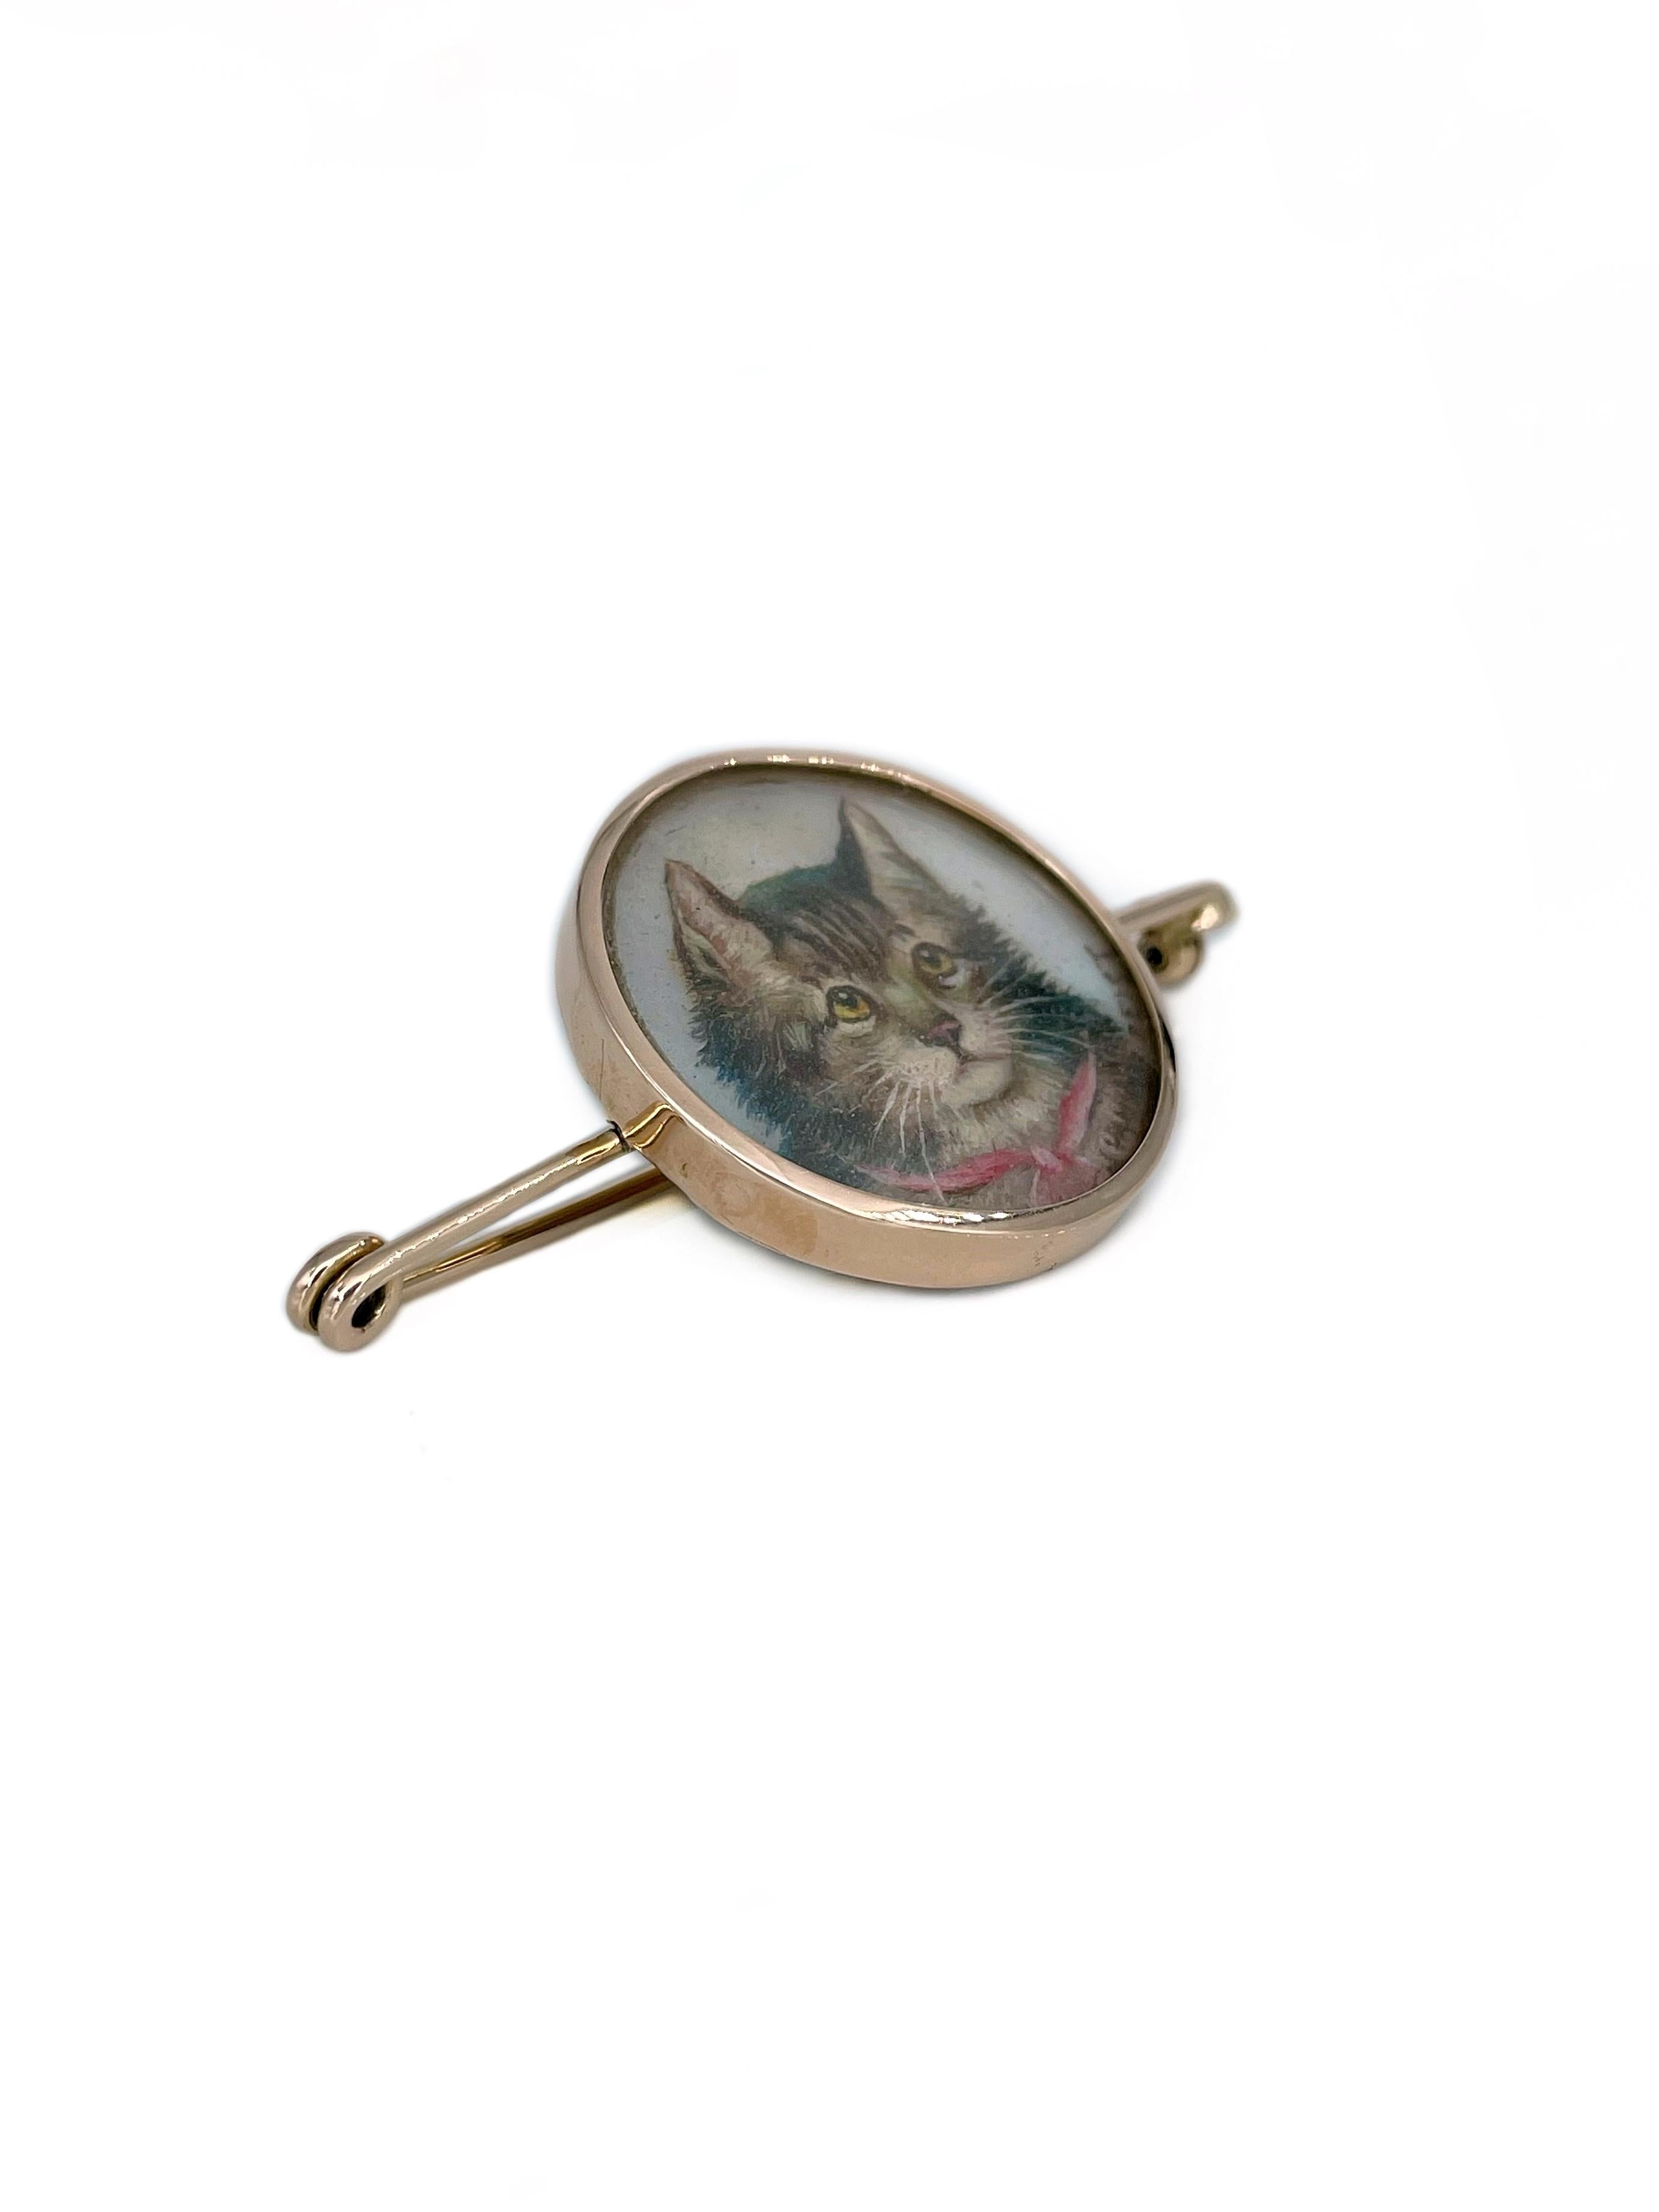 Dies ist eine viktorianische Brosche in 18K Gold gefertigt. Um 1900. 

Das Stück zeigt ein detailliertes Miniaturporträt einer Katze. Es ist handbemalt. Es gibt eine Signatur eines Autors. 

Gewicht: 9,03g
Länge: 5,5 cm
Durchmesser: 2.7 cm
---

Wenn